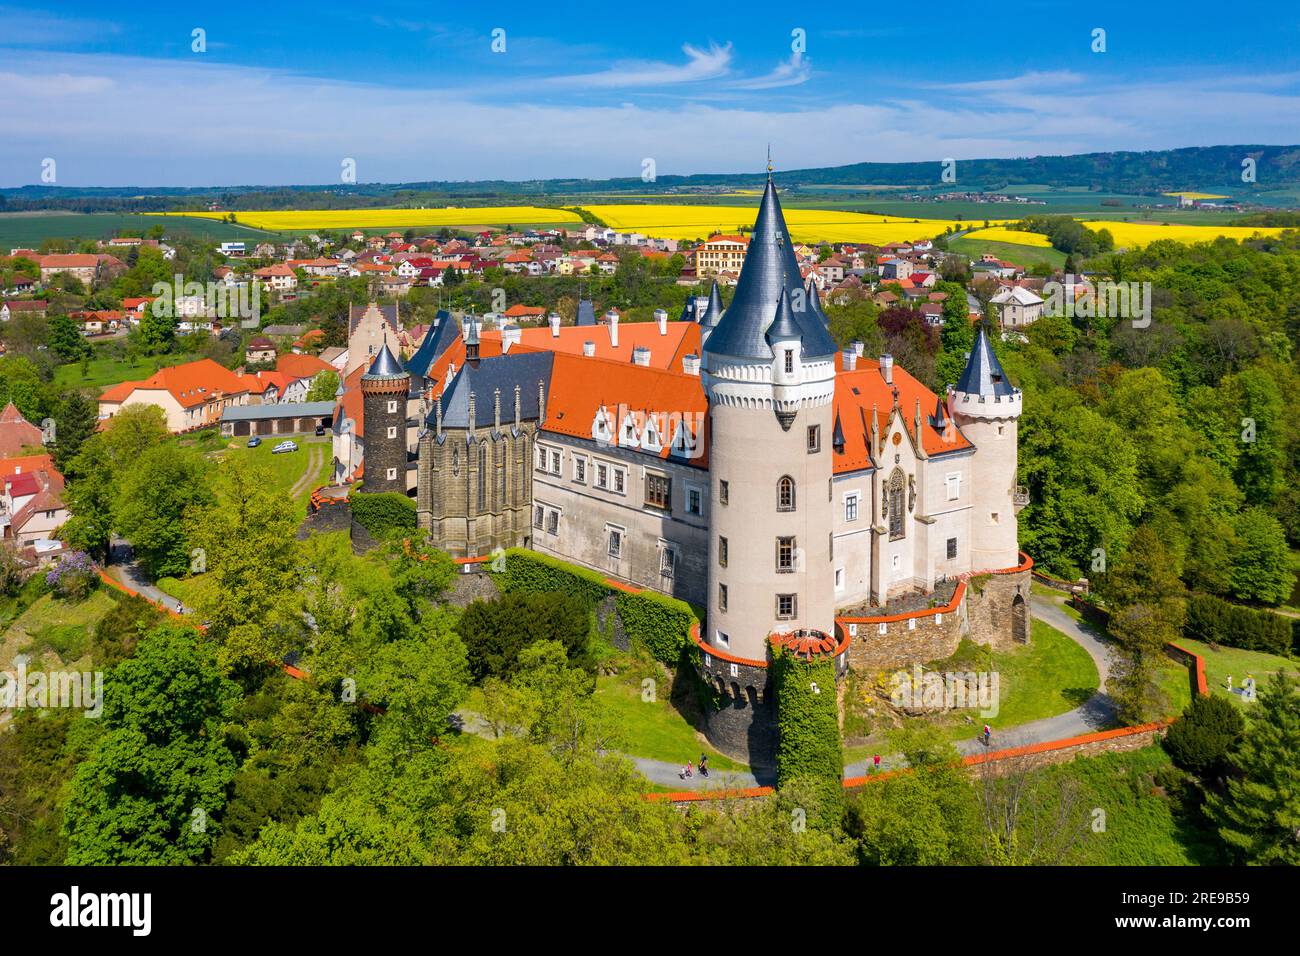 Luftaufnahme des Schlosses Zleby in der Region Mittelböhmen, Tschechische Republik. Die ursprüngliche Burg Zleby wurde im neugotischen Stil des Schlosses umgebaut. Chatten Stockfoto